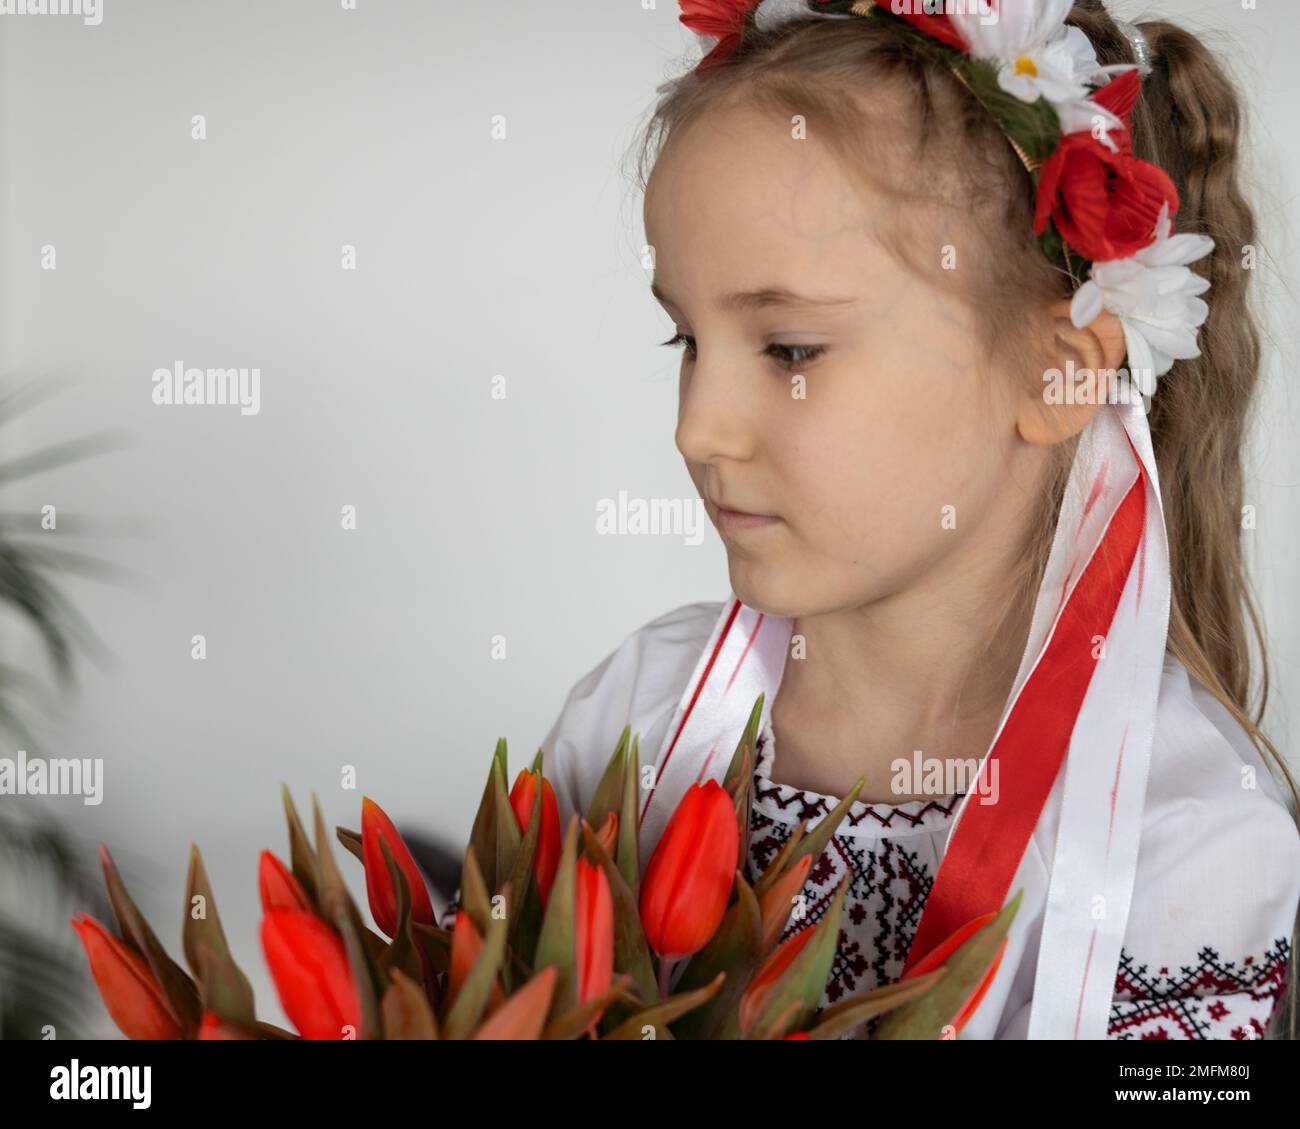 Ein grüblerisches Mädchen in einem ukrainischen Nationaltrikot und einem Strauß roter Tulpen - das Konzept einer friedlichen Ukraine Stockfoto